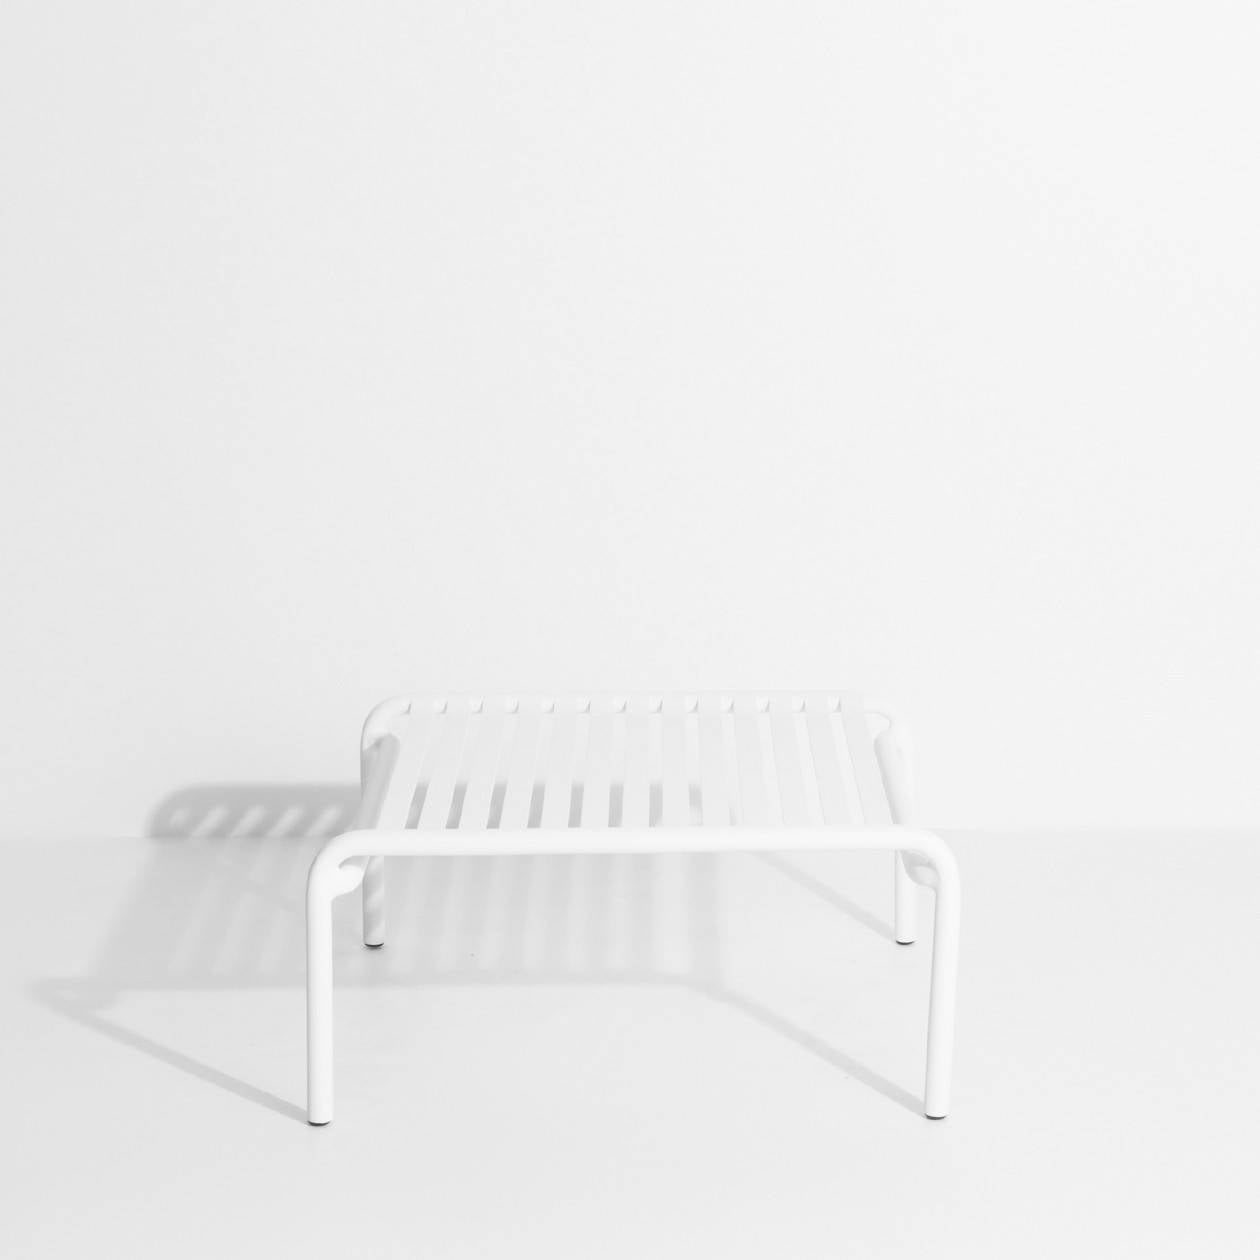 Week-End Coffee Table small in White präsentiert im Onlineshop von KAQTU Design AG. Beistelltisch Outdoor ist von Petite Friture